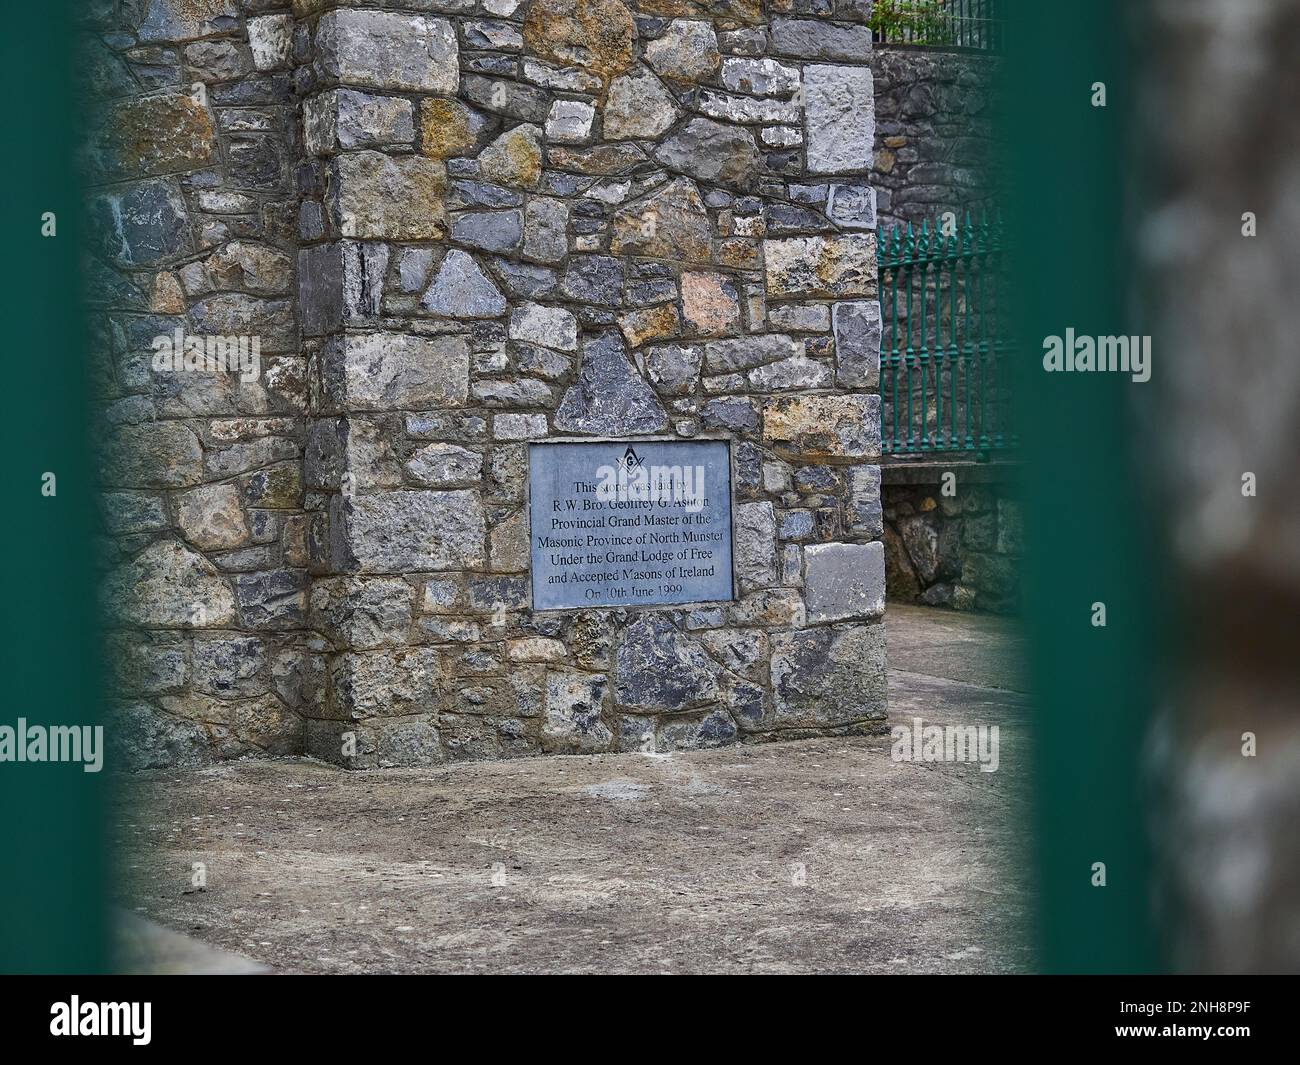 Limerick, Irland - 09 18 2015: schild und Verzierungen einer kostenlosen Mauerwerk-Lodge auf einem alten historischen Gebäude im Stadtzentrum von Limerick. Stockfoto